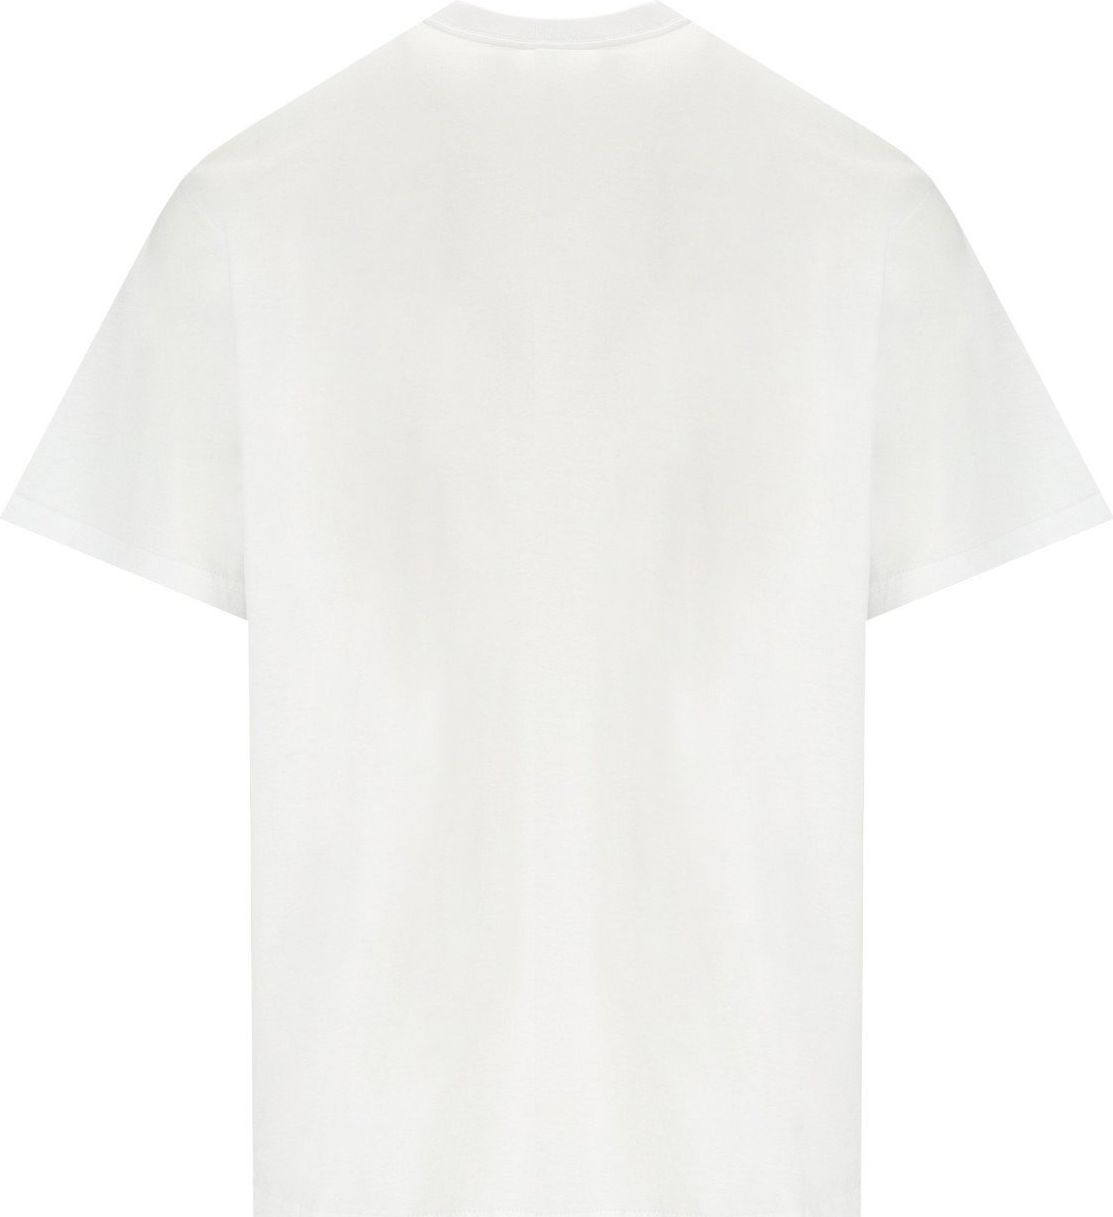 Carhartt Wip S/s Madison White T-shirt White Wit